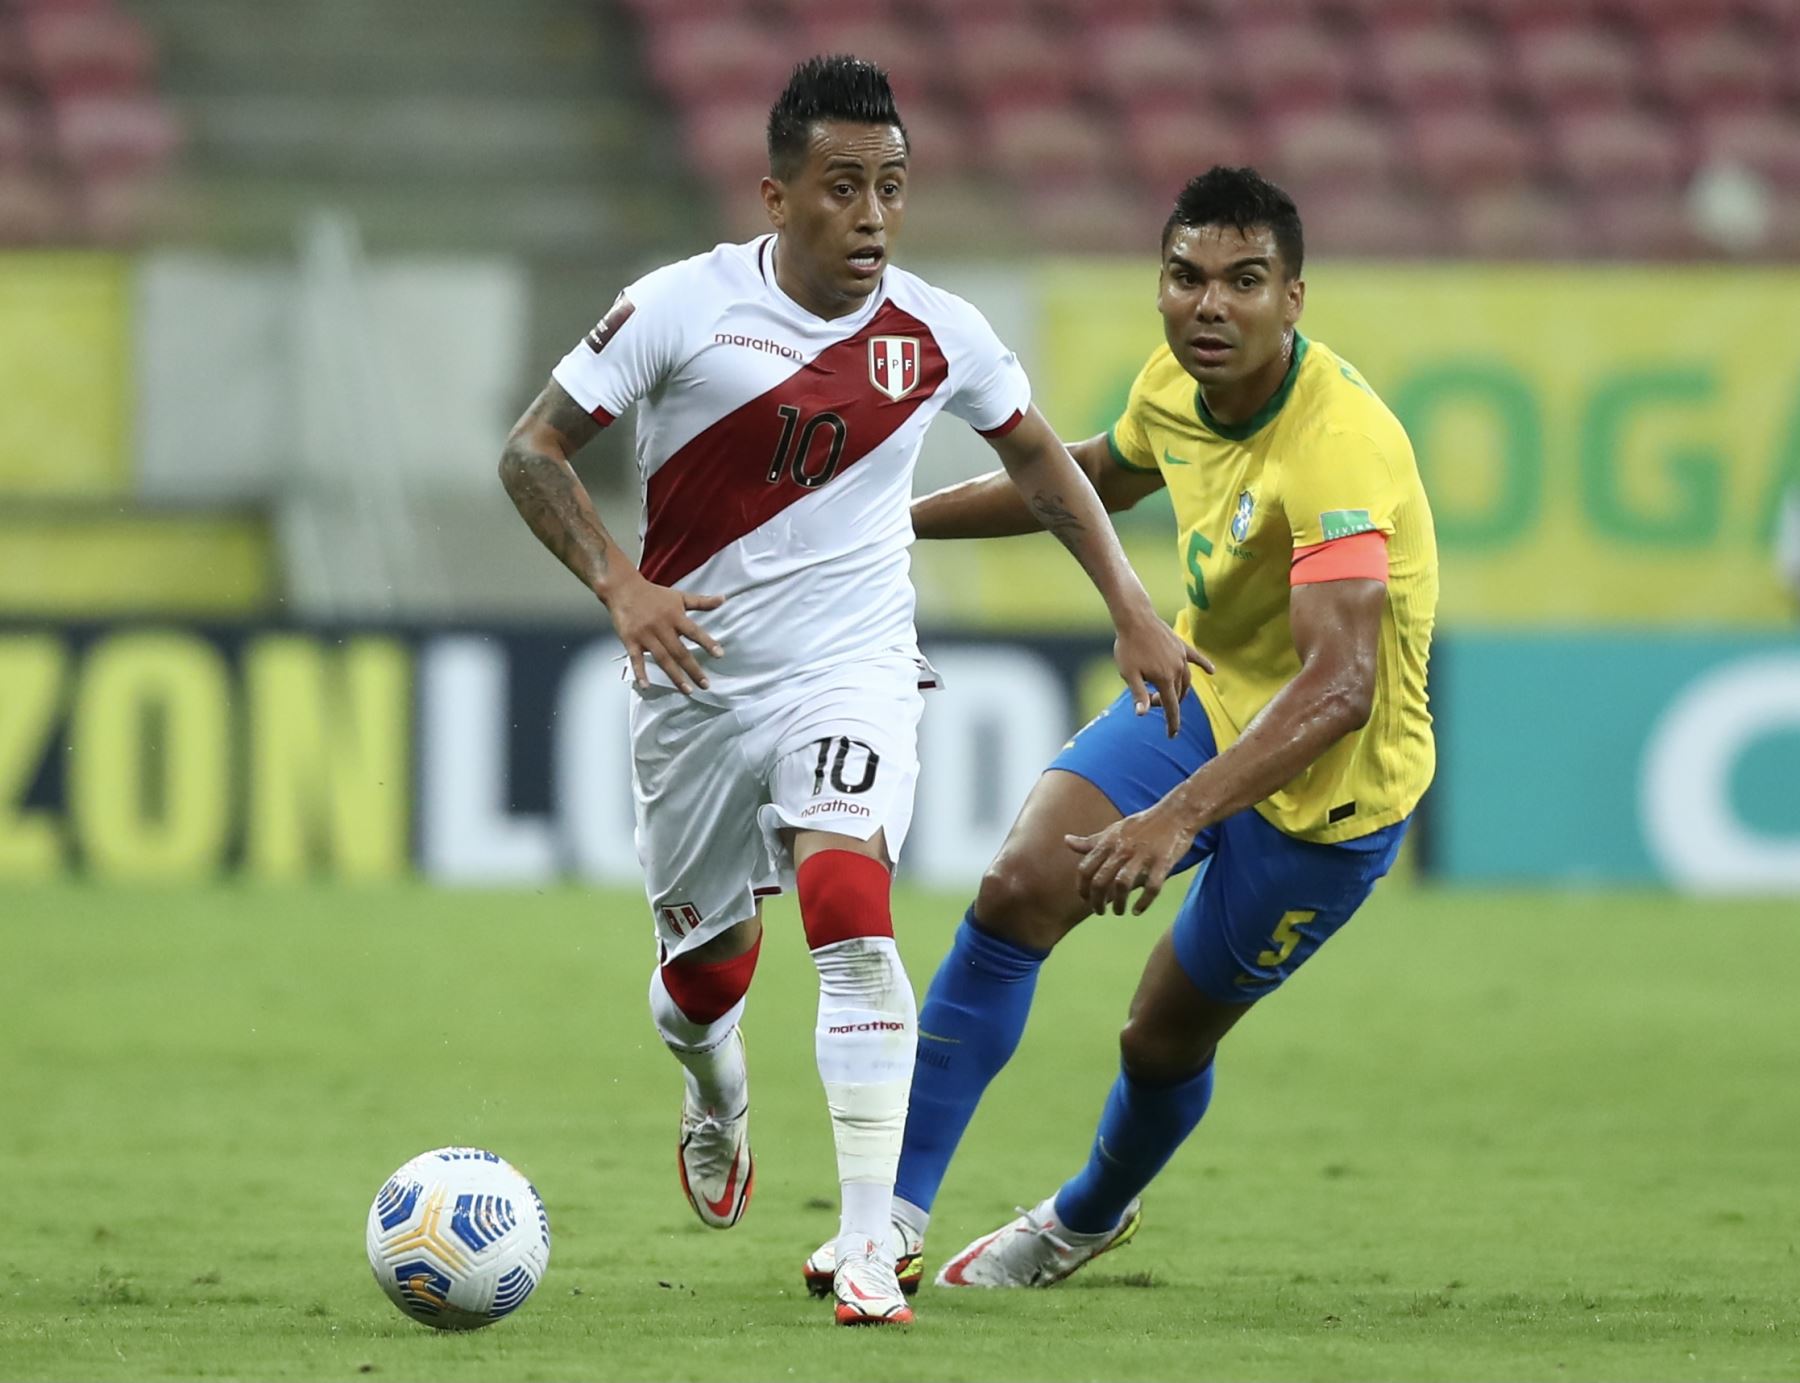 La selección peruana fracasó en su intento de quitarle puntos a Brasil en Recife